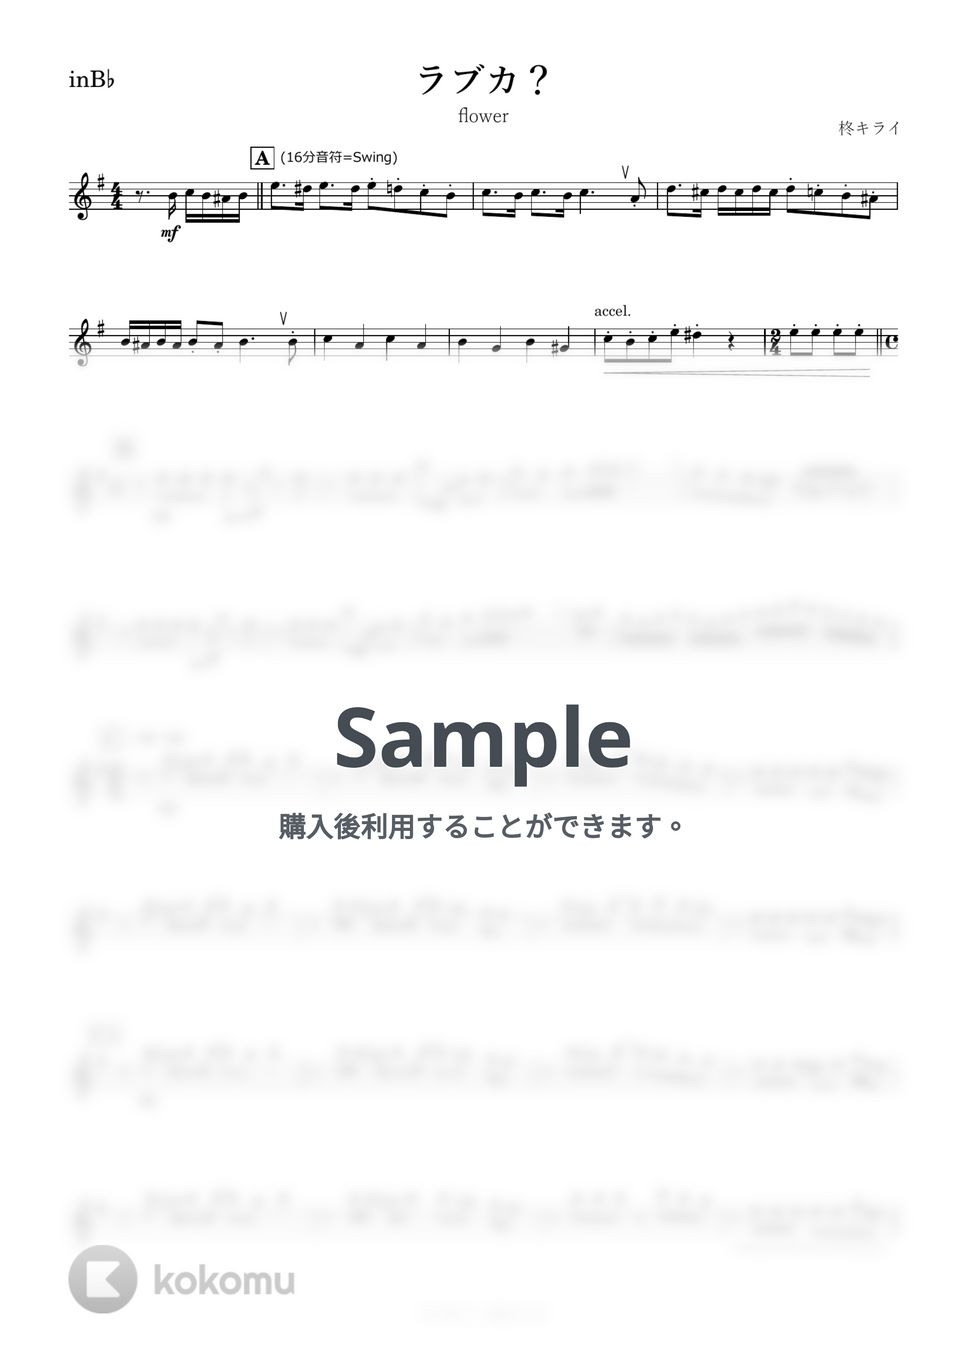 柊キライ - ラブカ？ (B♭) by kanamusic